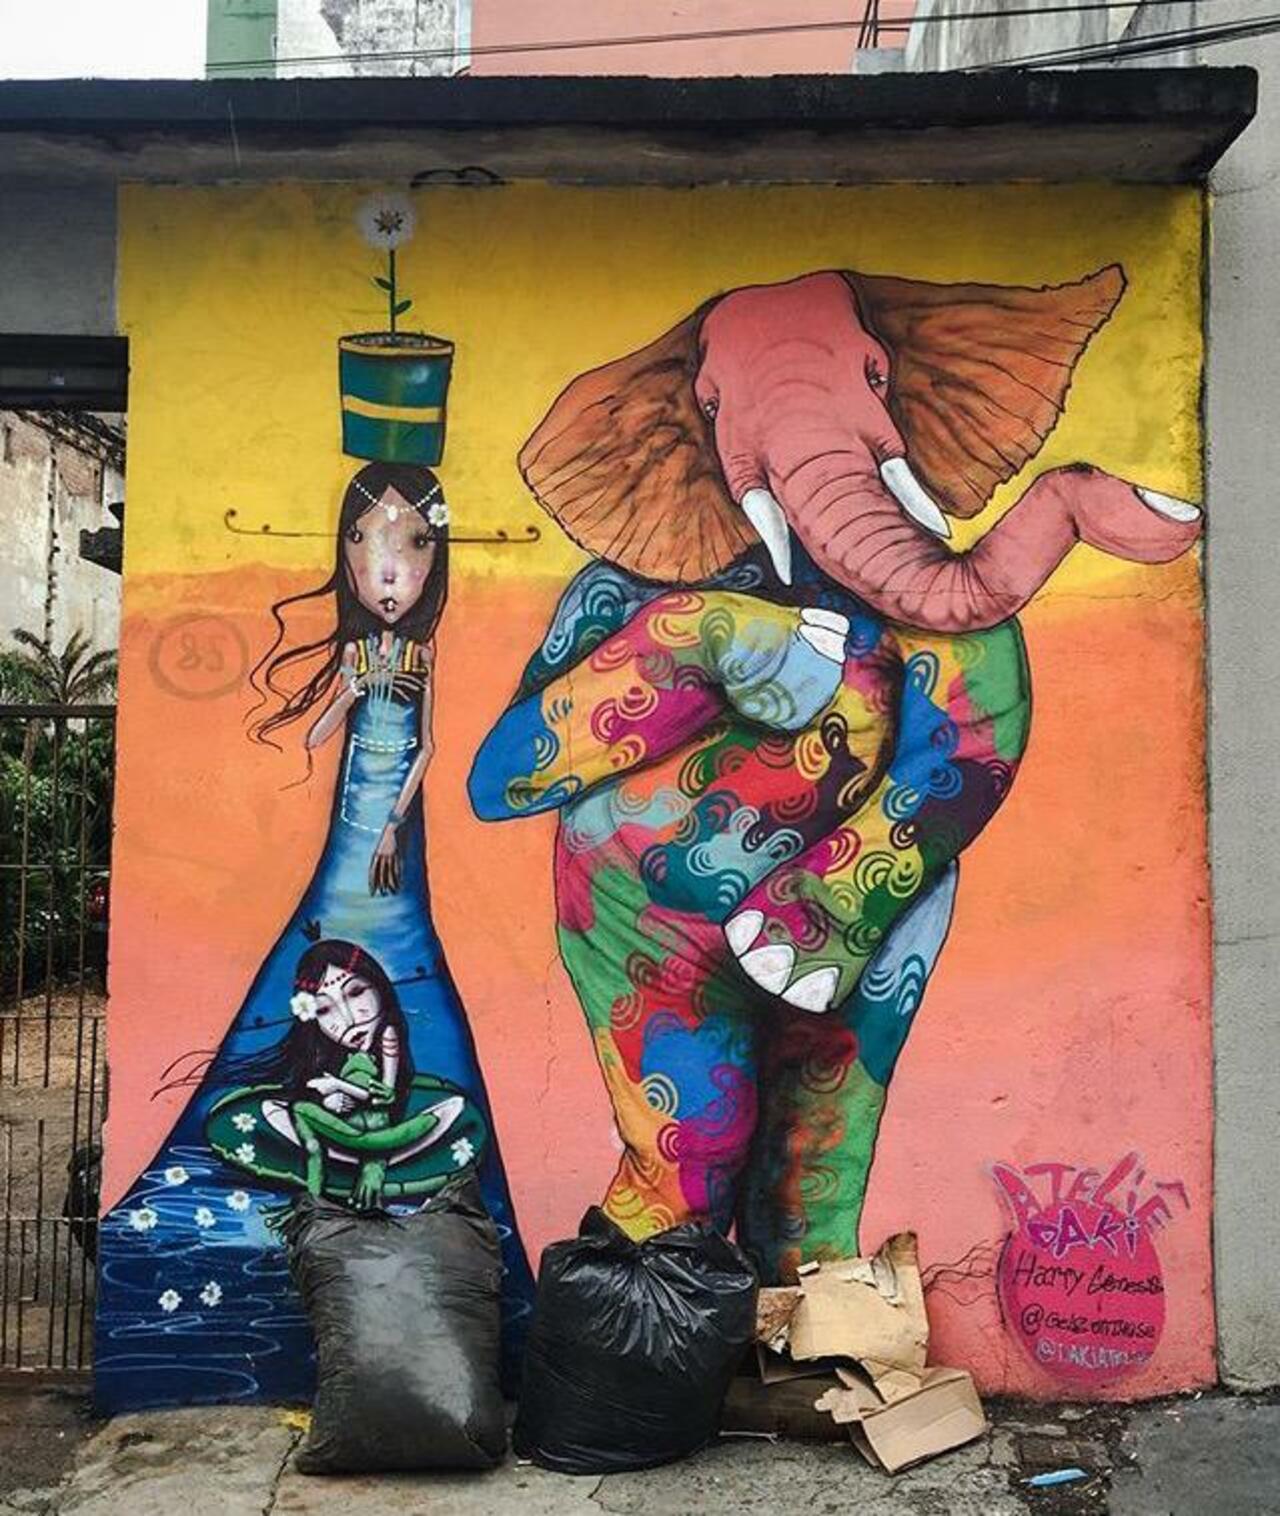 Street Art by Harry Geneis & Gelson in São Paulo 

#art #mural #graffiti #streetart http://t.co/kNBkp6QOvU